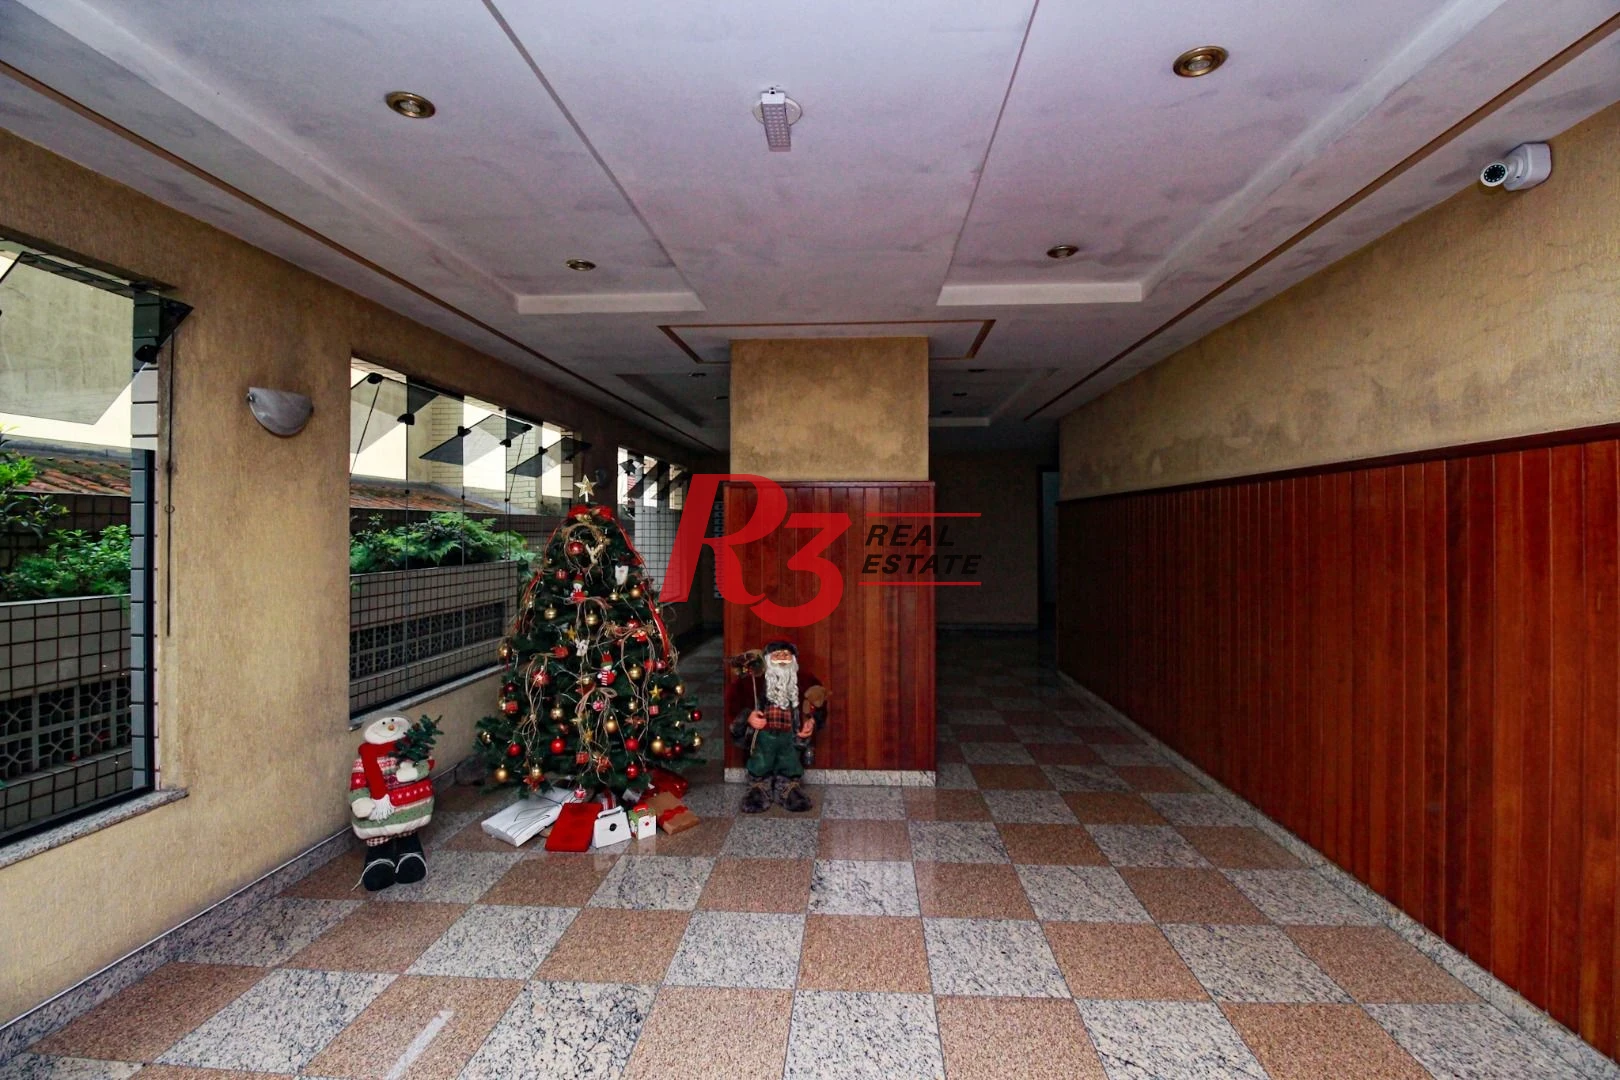 Apartamento à venda, 61 m² por R$ 370.000,00 - Embaré - Santos/SP